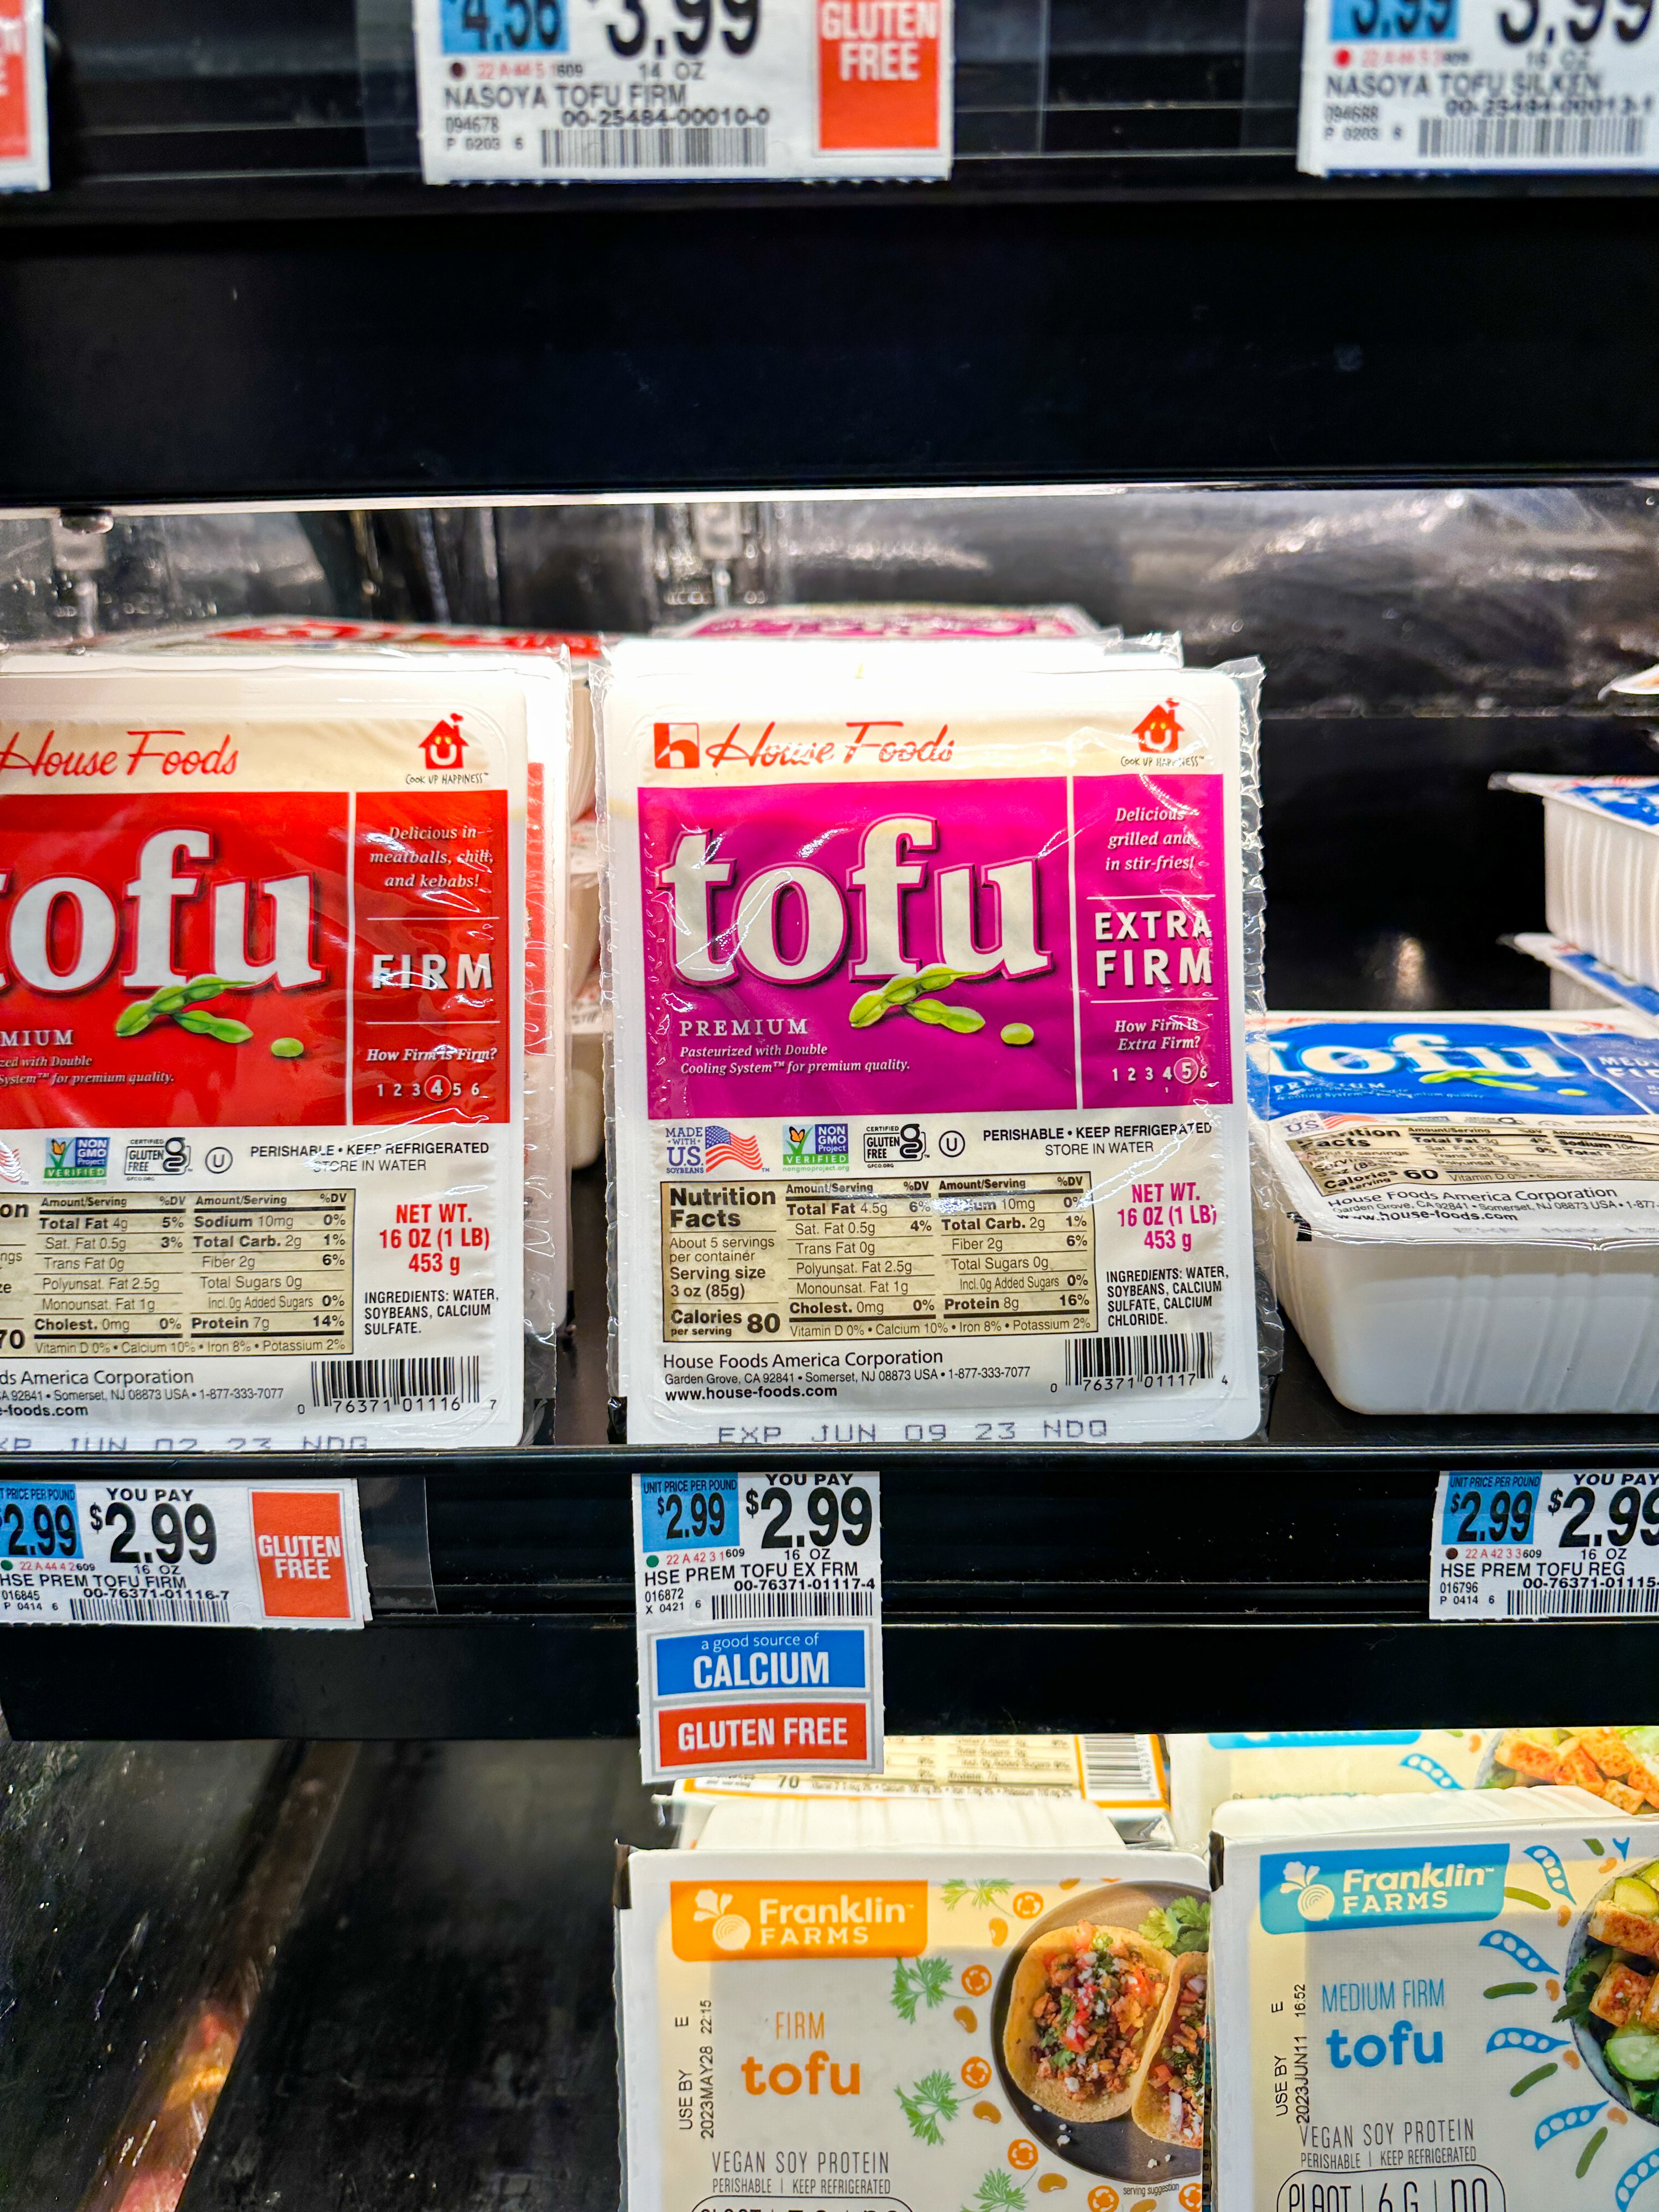 tofu for 2.99